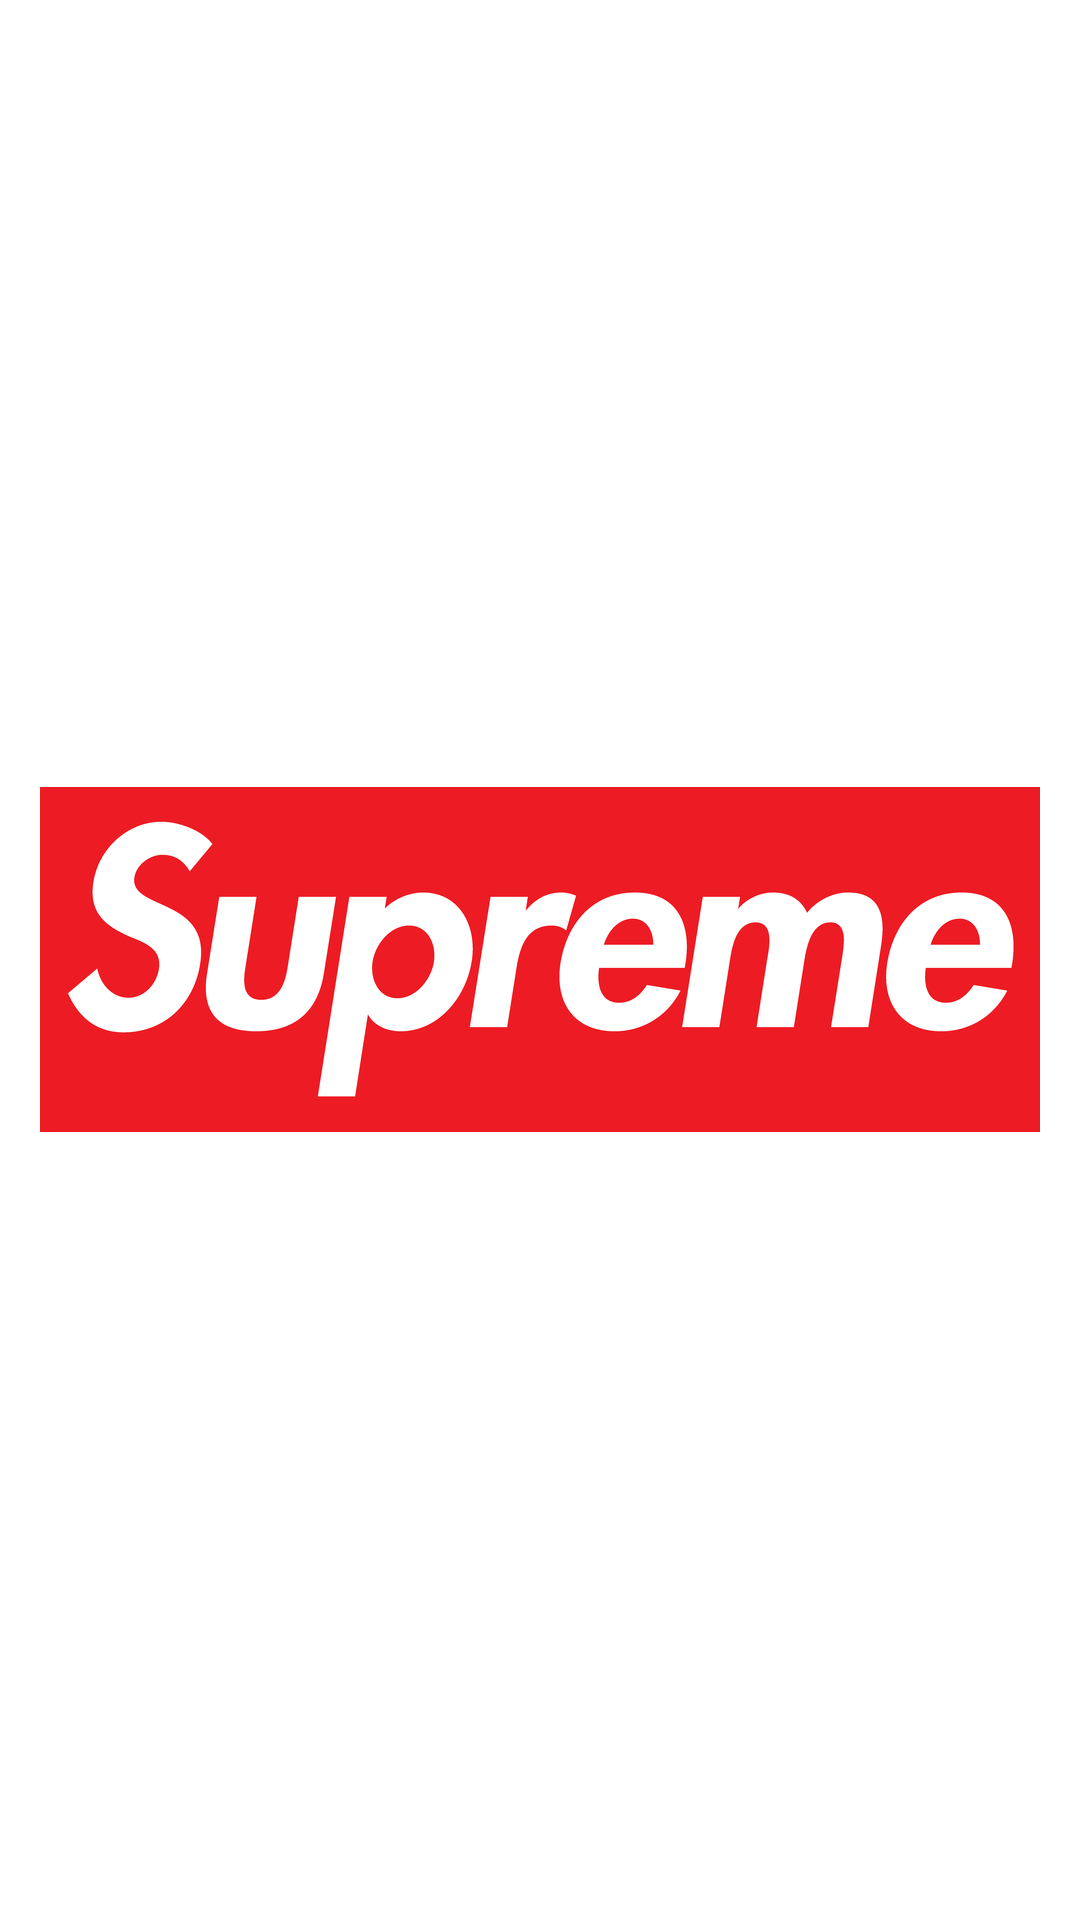 supreme logo wallpaper hd